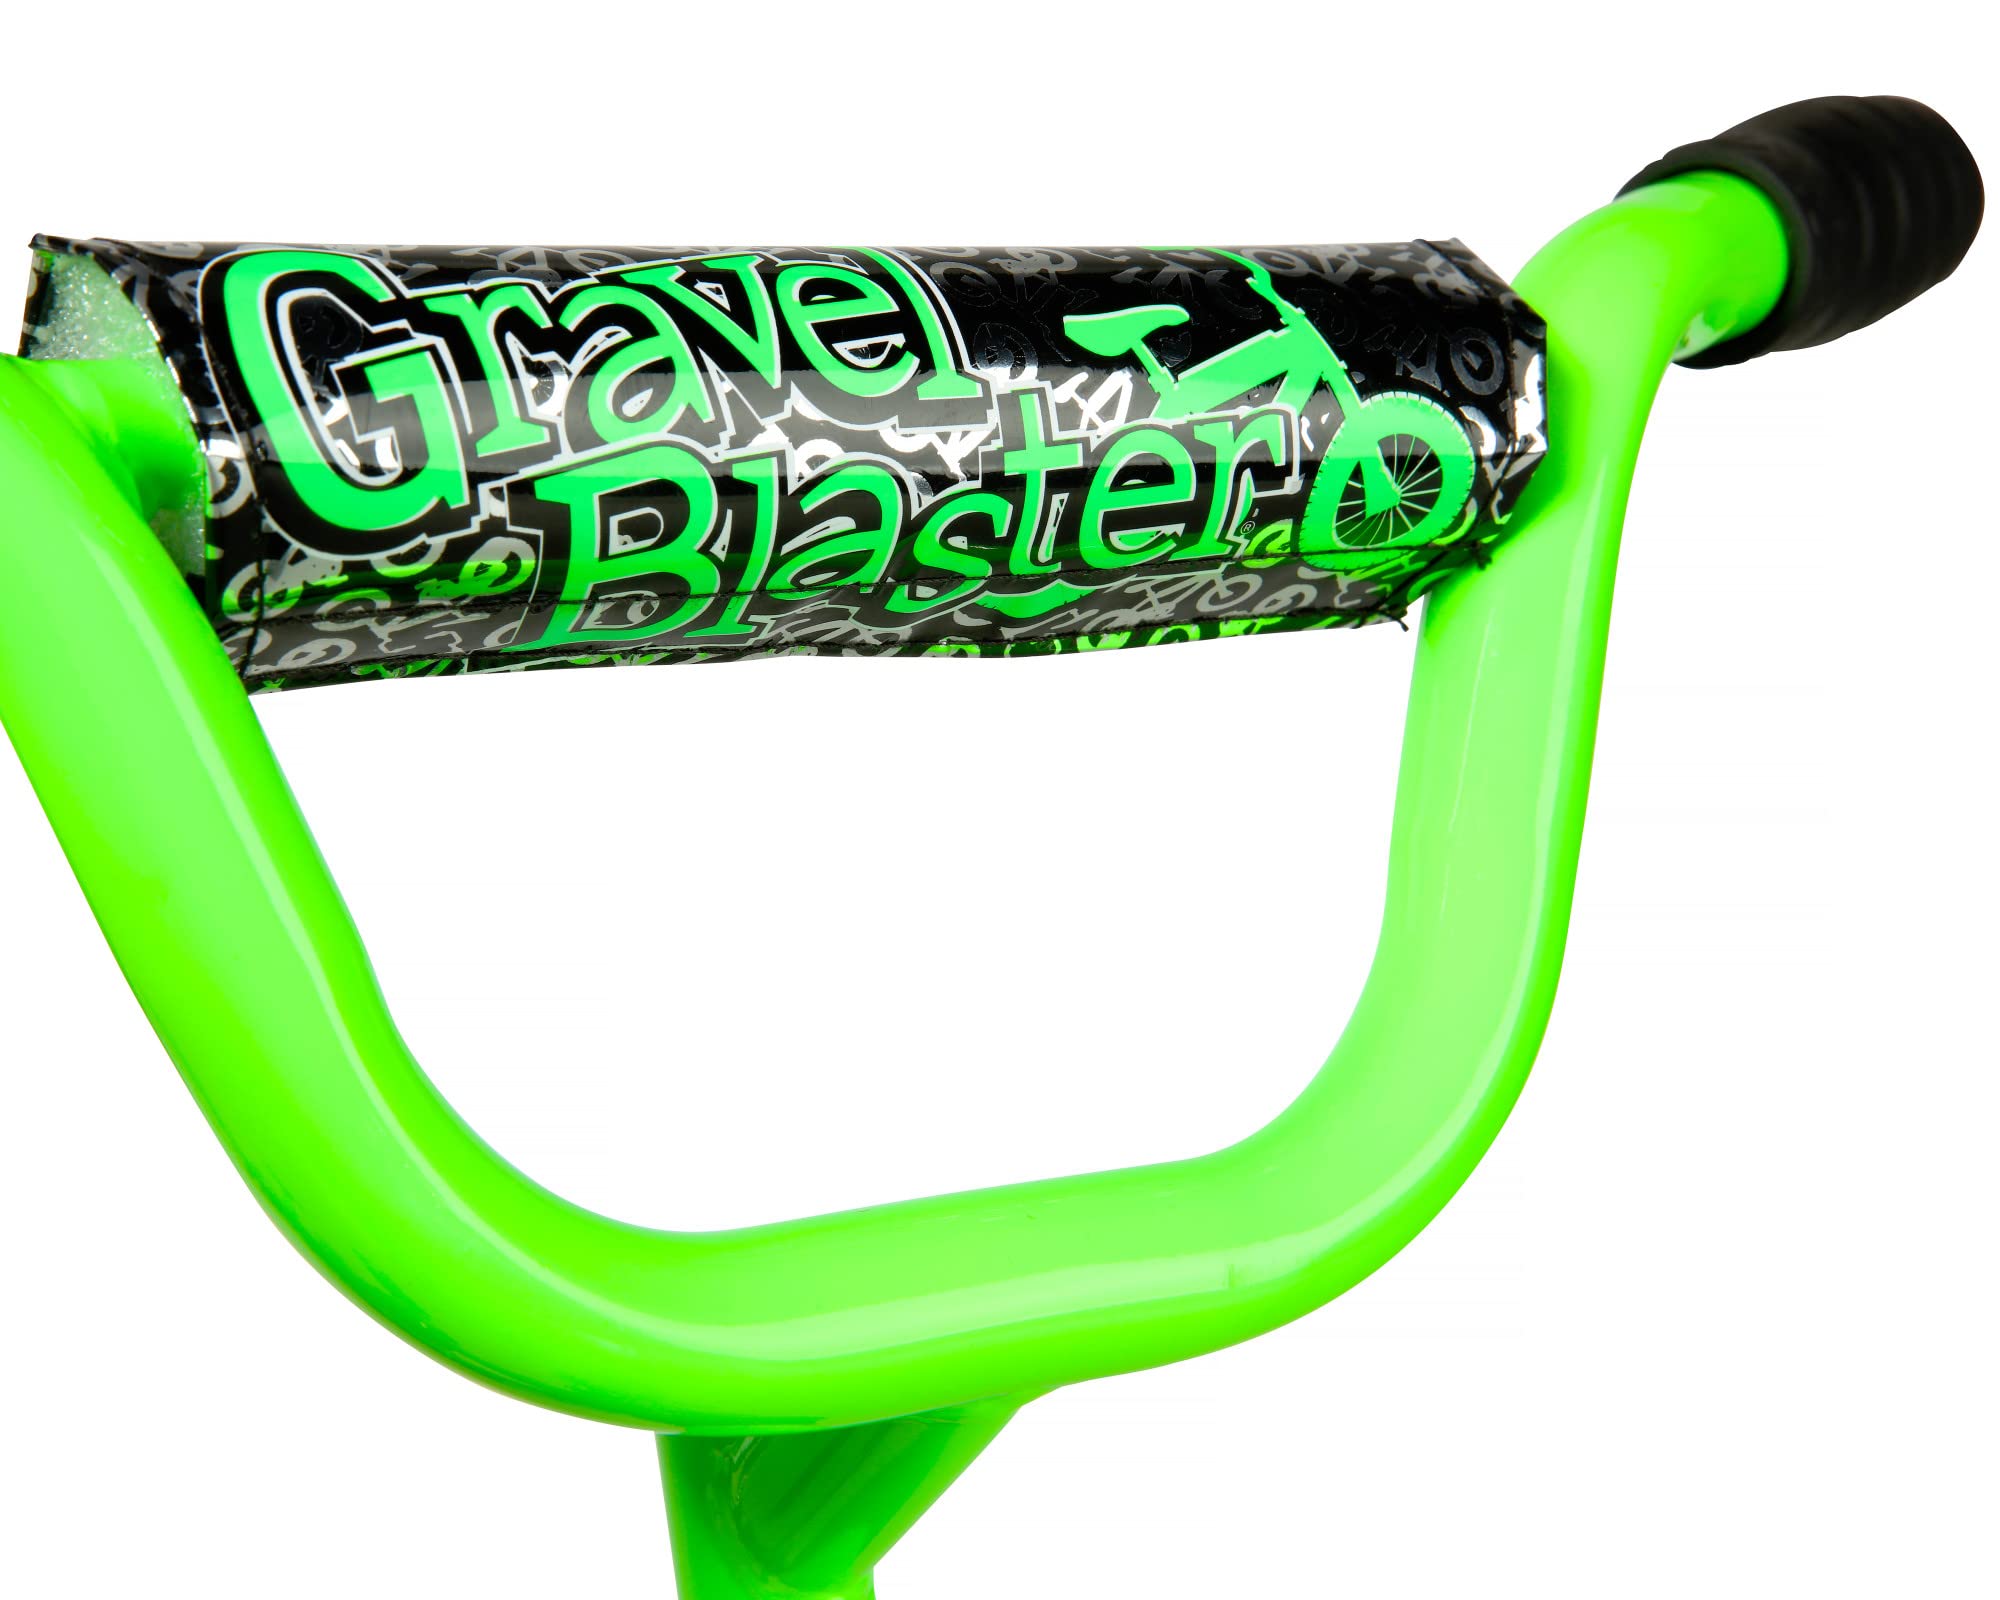 Dynacraft Gravel Blaster Bike Black, 12